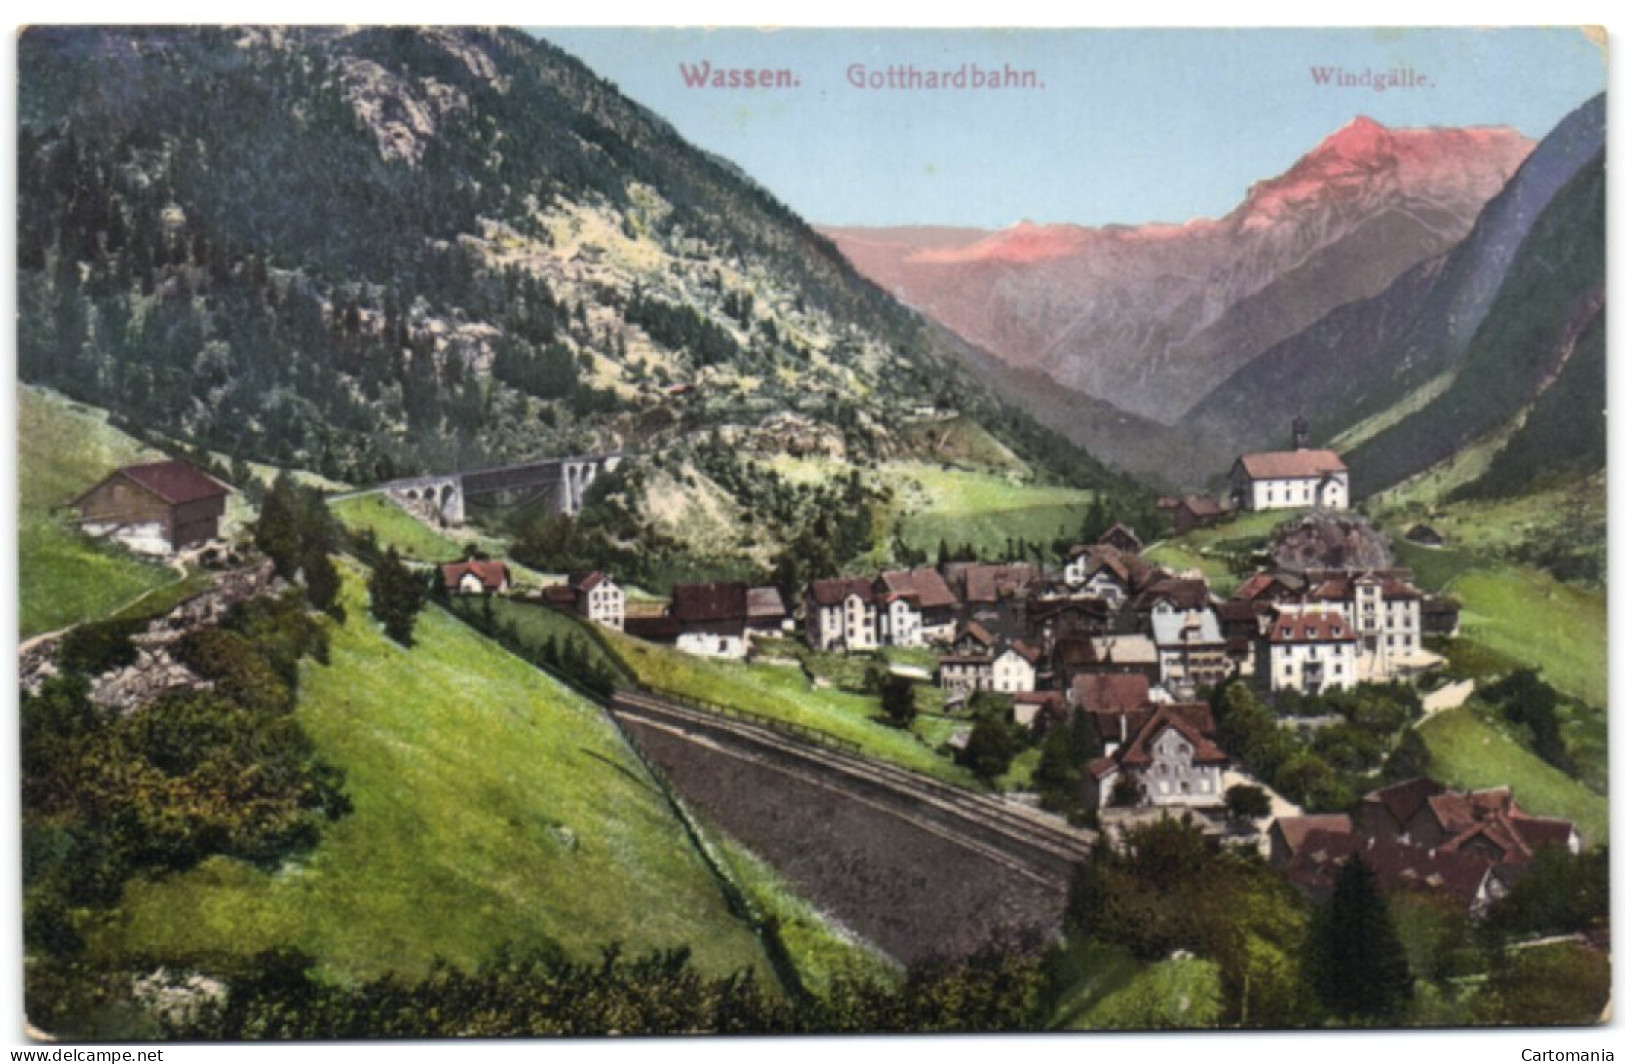 Wassen - Gotthardbahn - Wassen